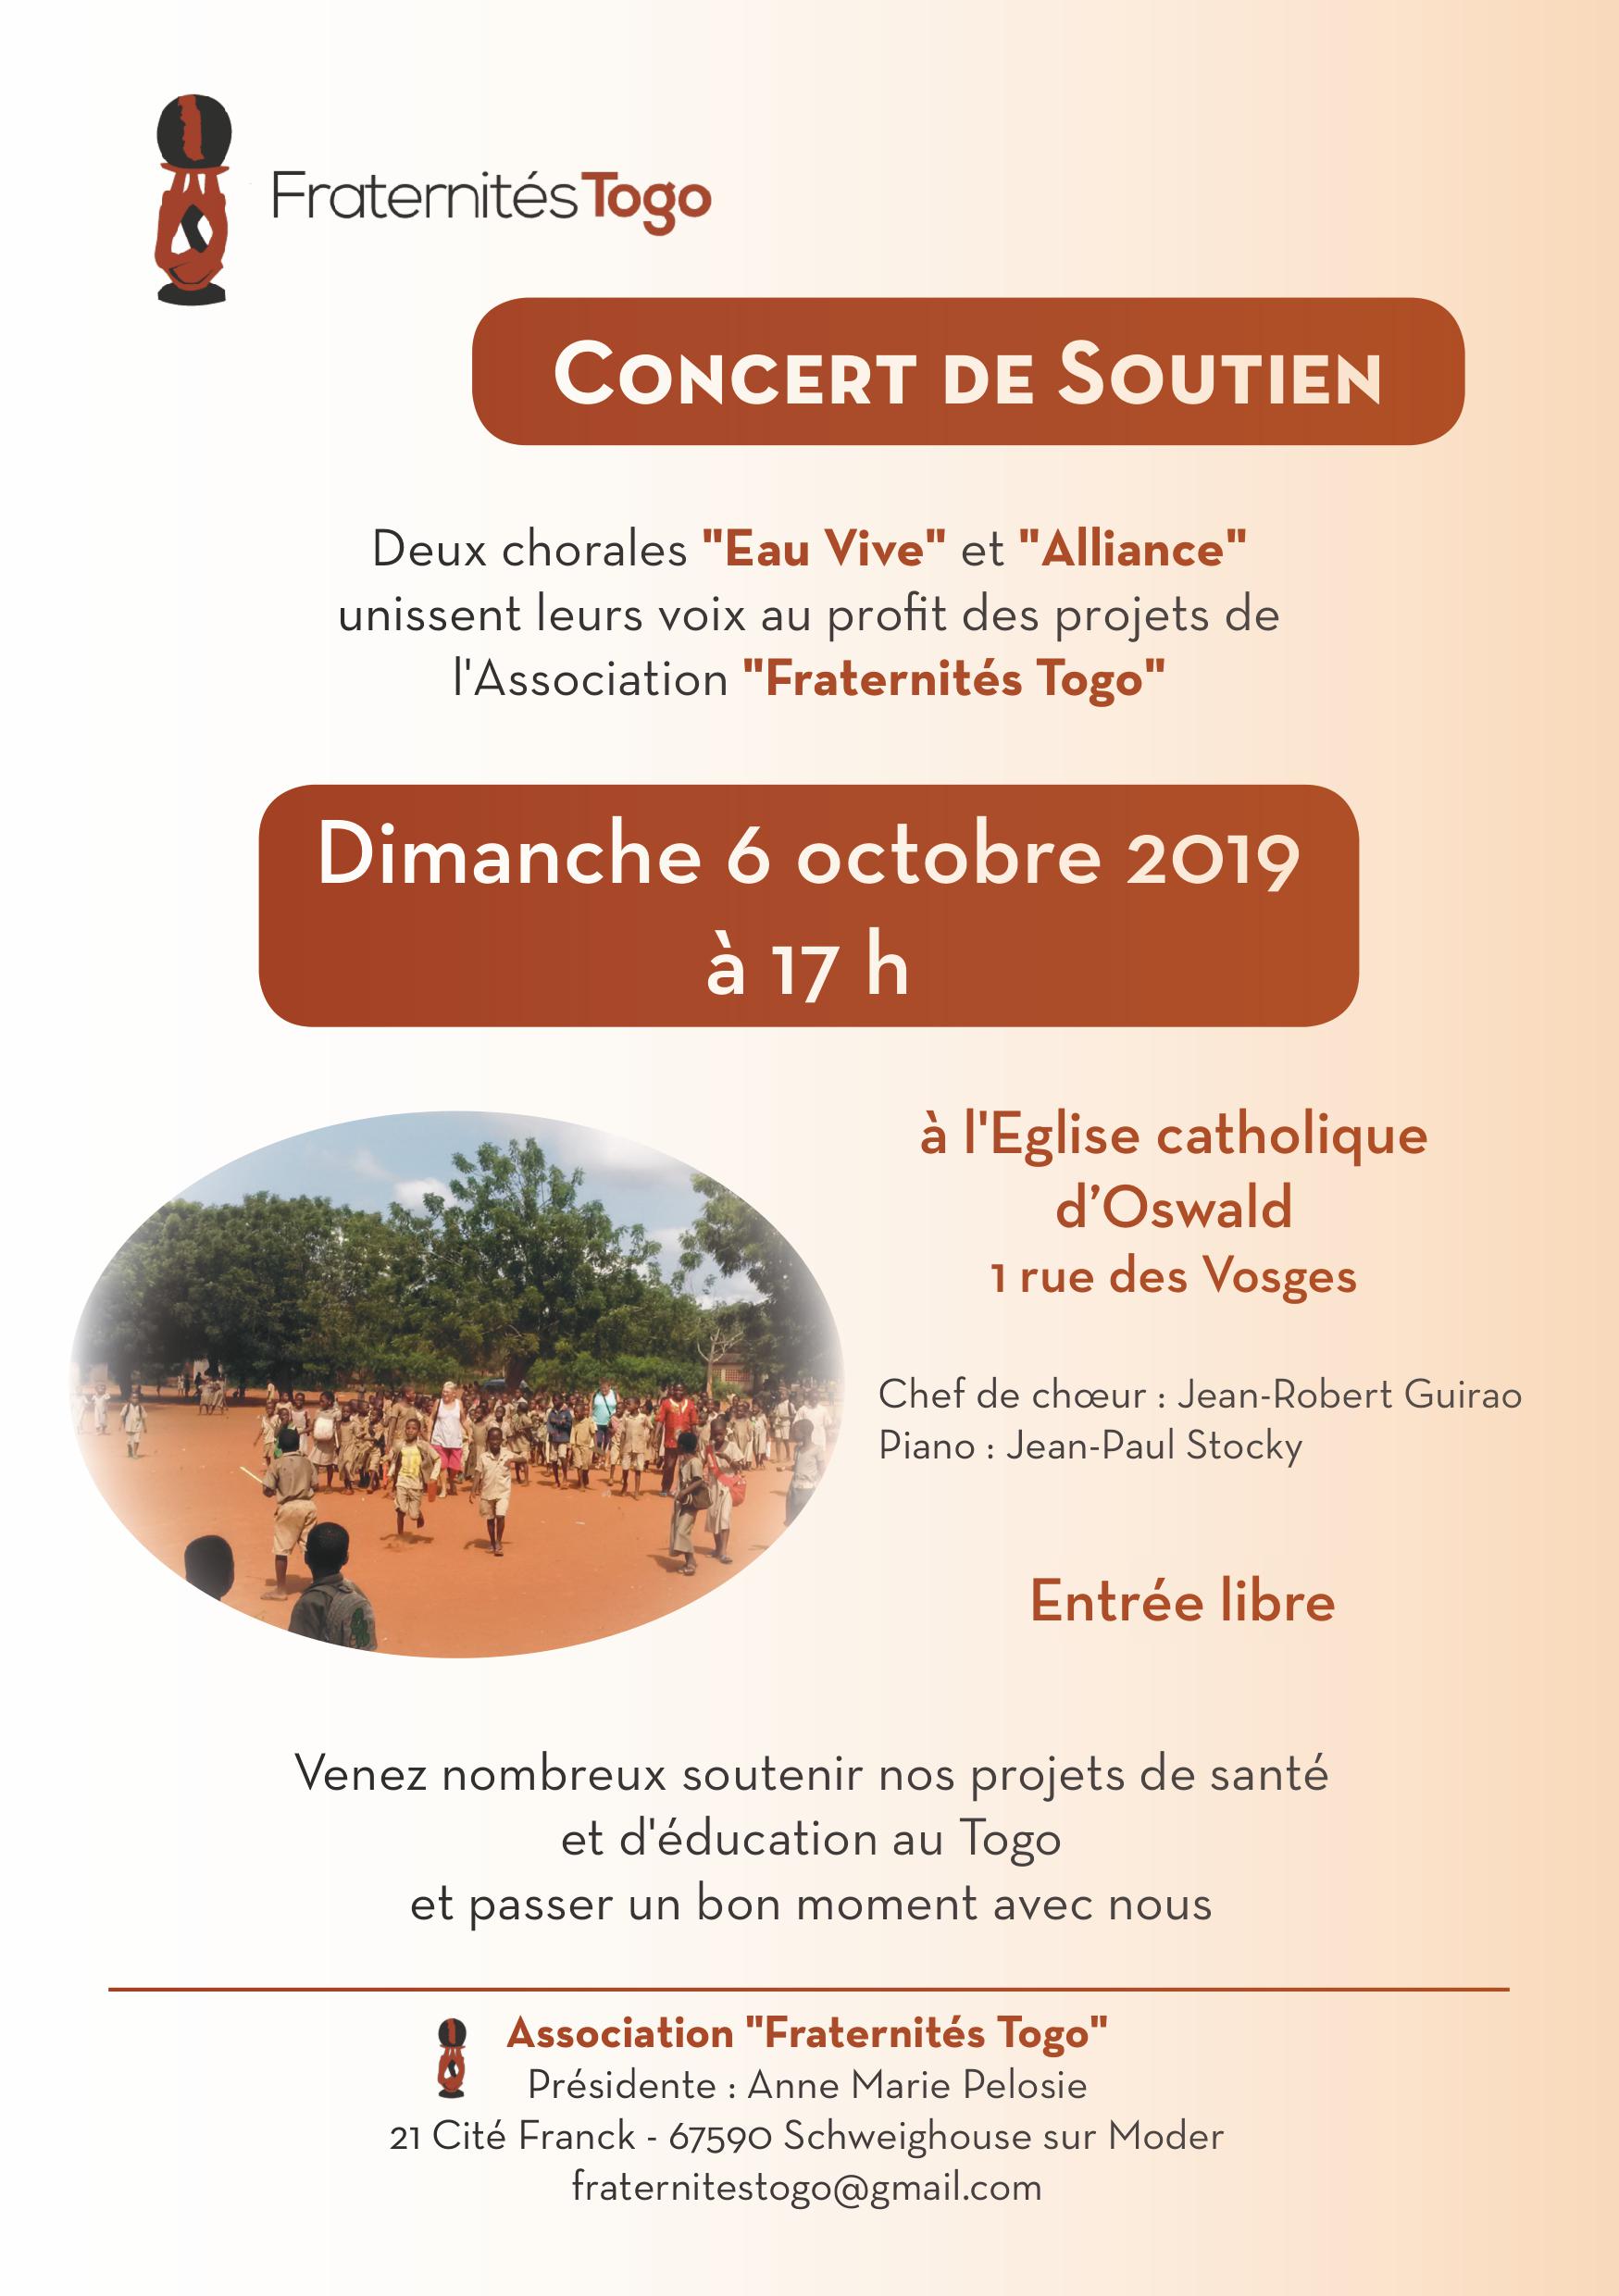 Fraternités Togo - Concert de soutien